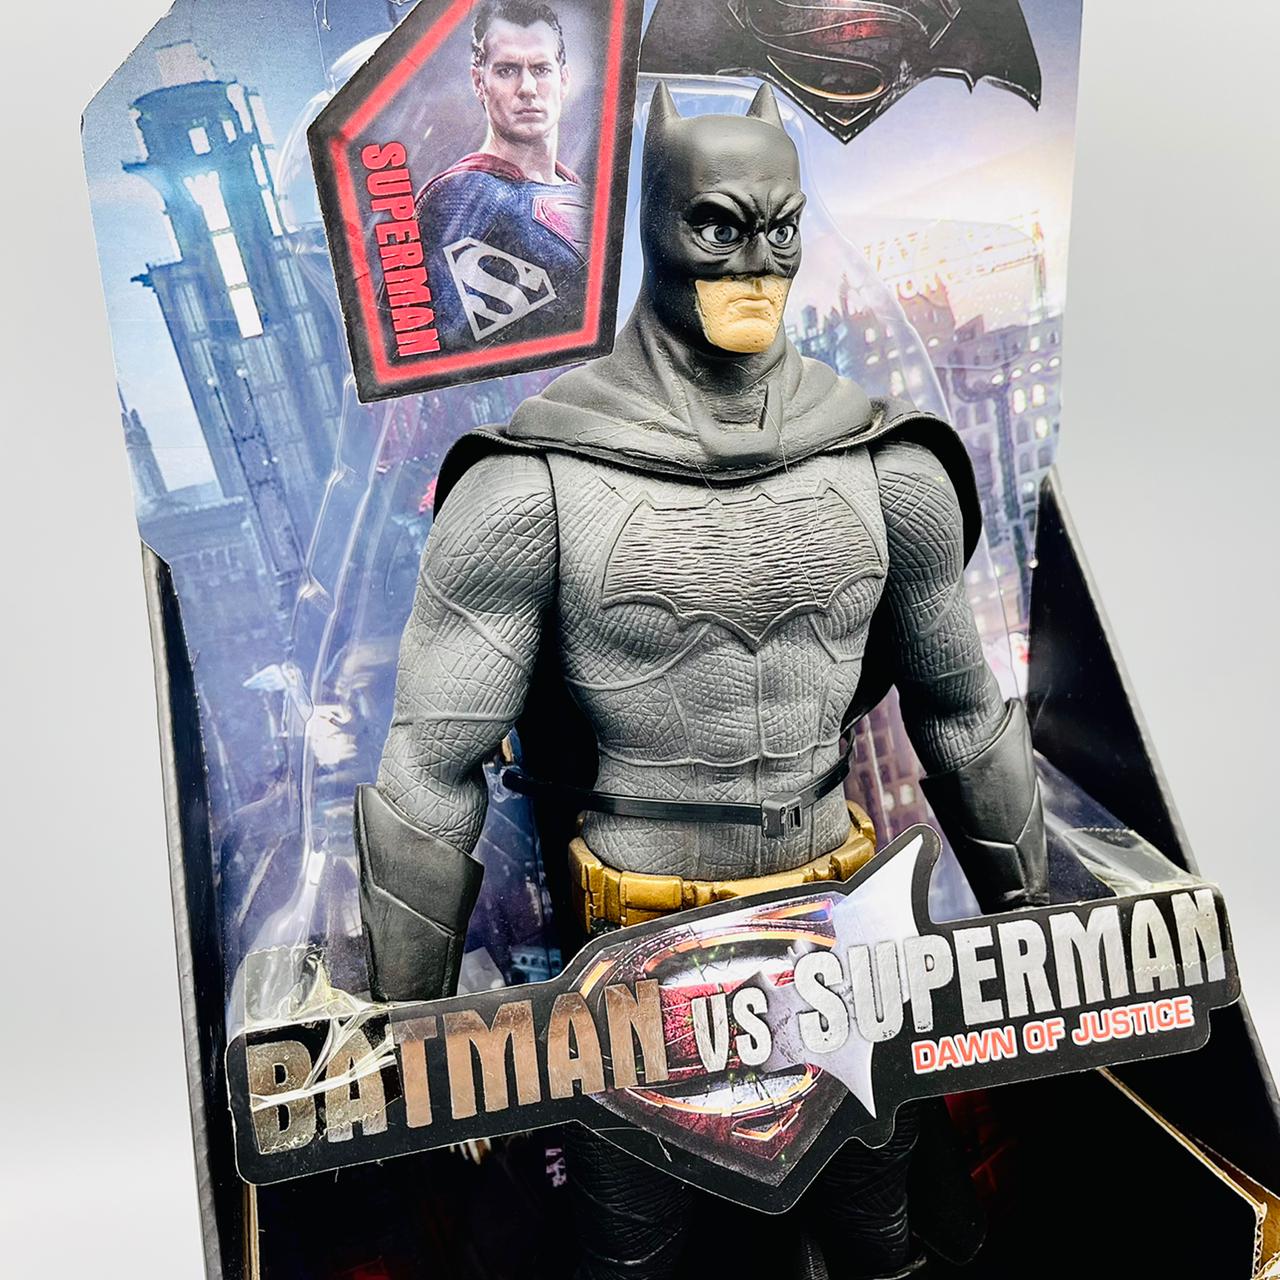 Premium Rubberized Action Figure - Bat Man